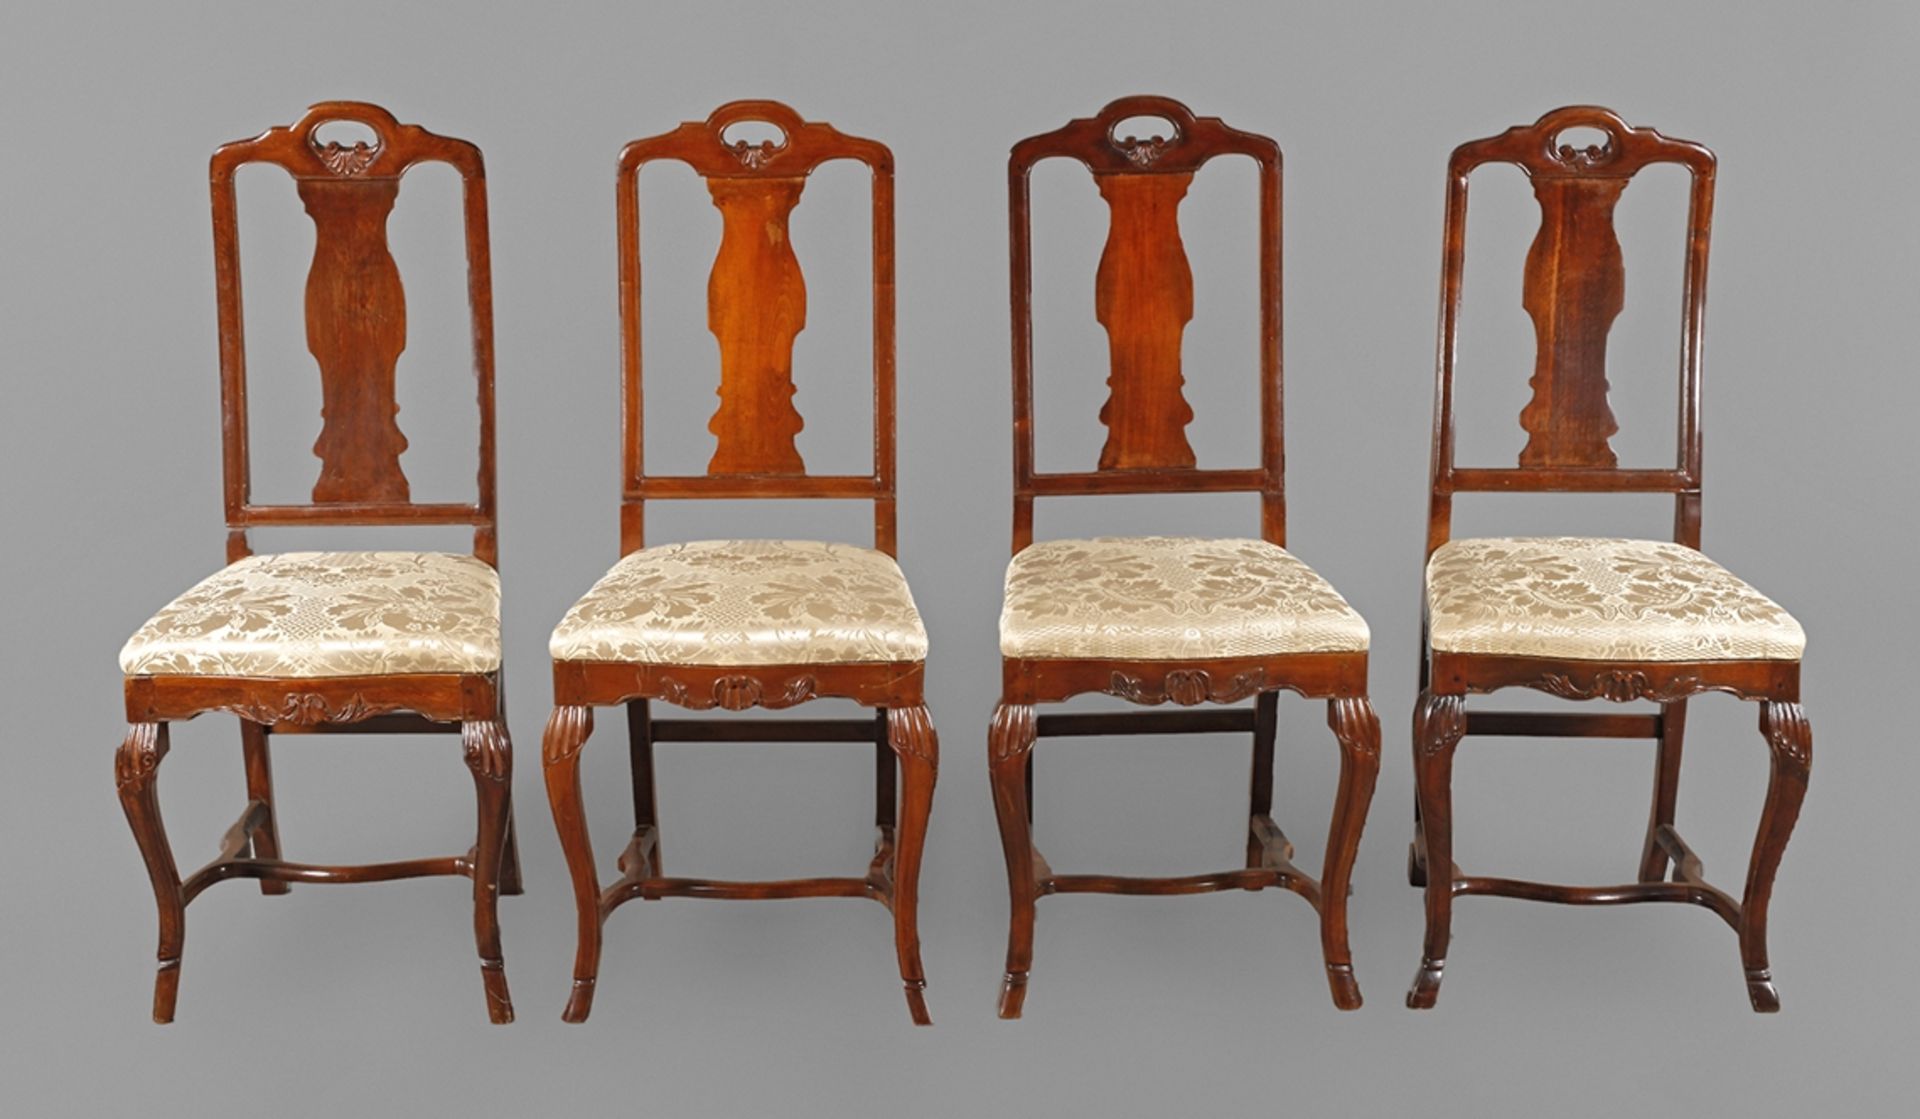 Vier Stühle im BarockstilBuche massiv, auf Mahagoni gebeizt, 18./20. Jh., alle Verbindungen mit